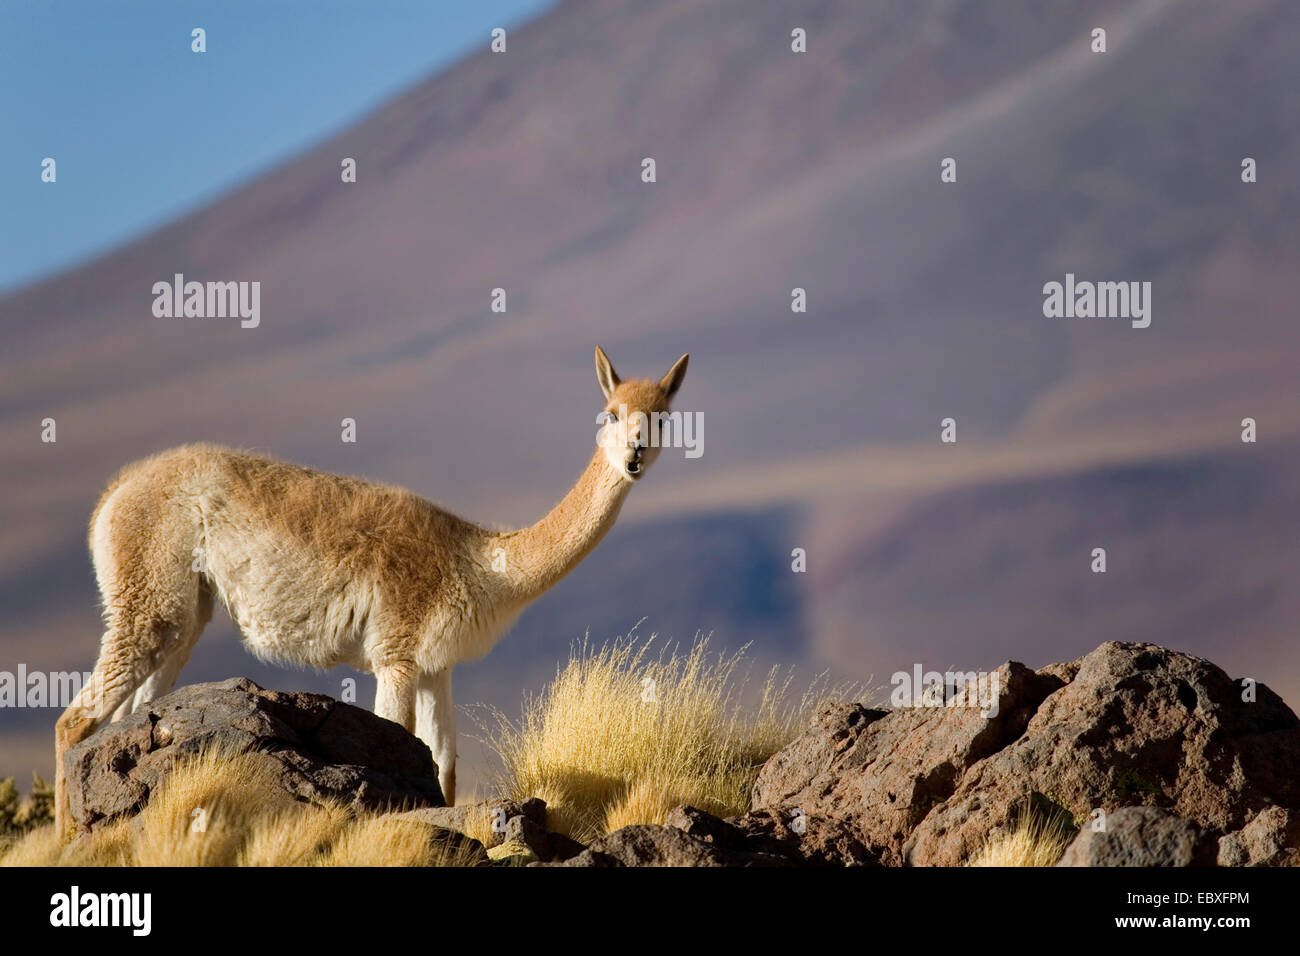 La vigogne (Vicugna vicugna), à la recherche vers la caméra, Chili Banque D'Images